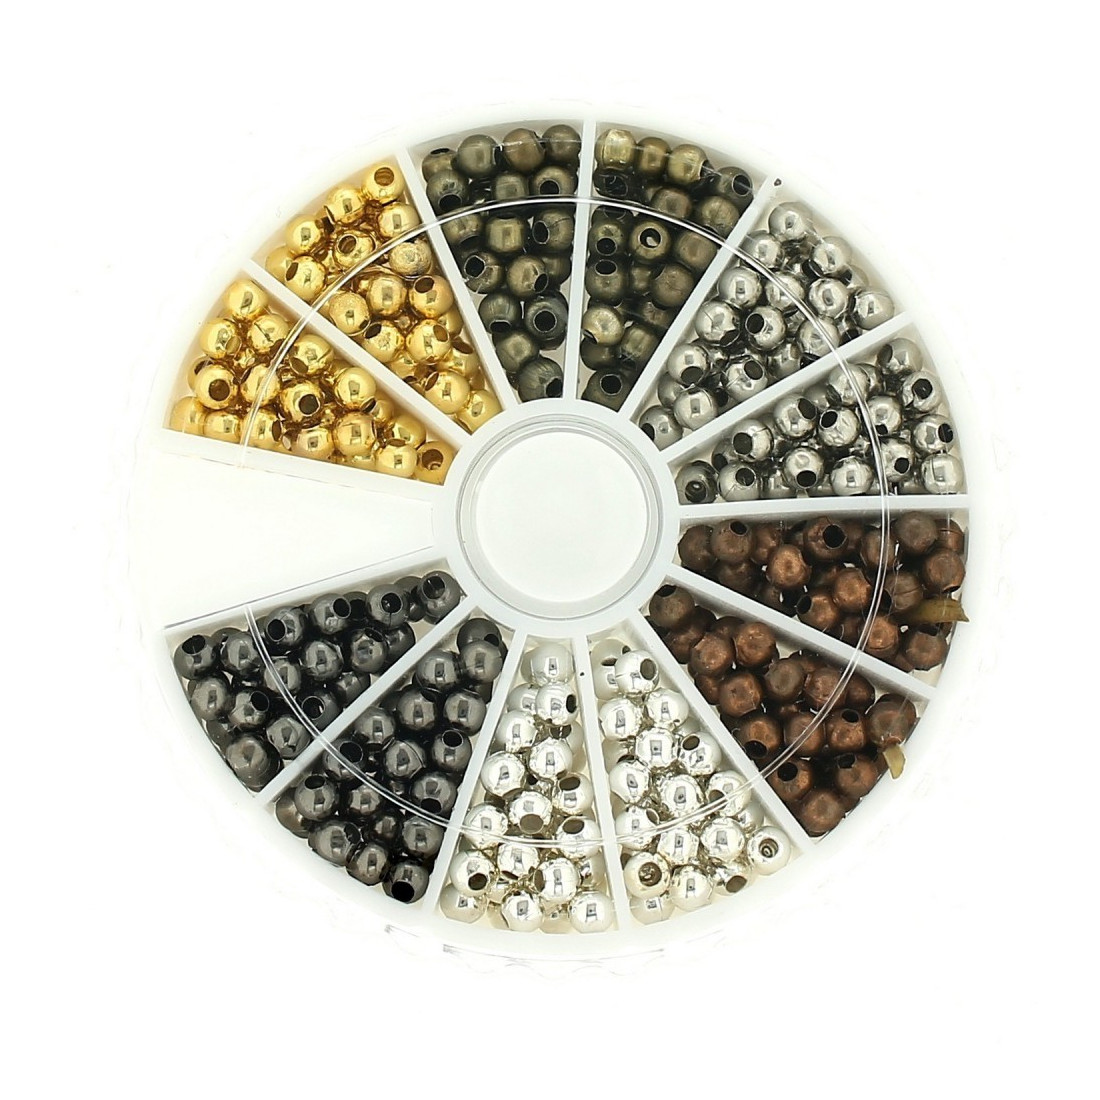 Boite box de perles perles intercalaires spacer 3mm - 6 coloris (argenté, doré, bronze,..) - env 480 pièces